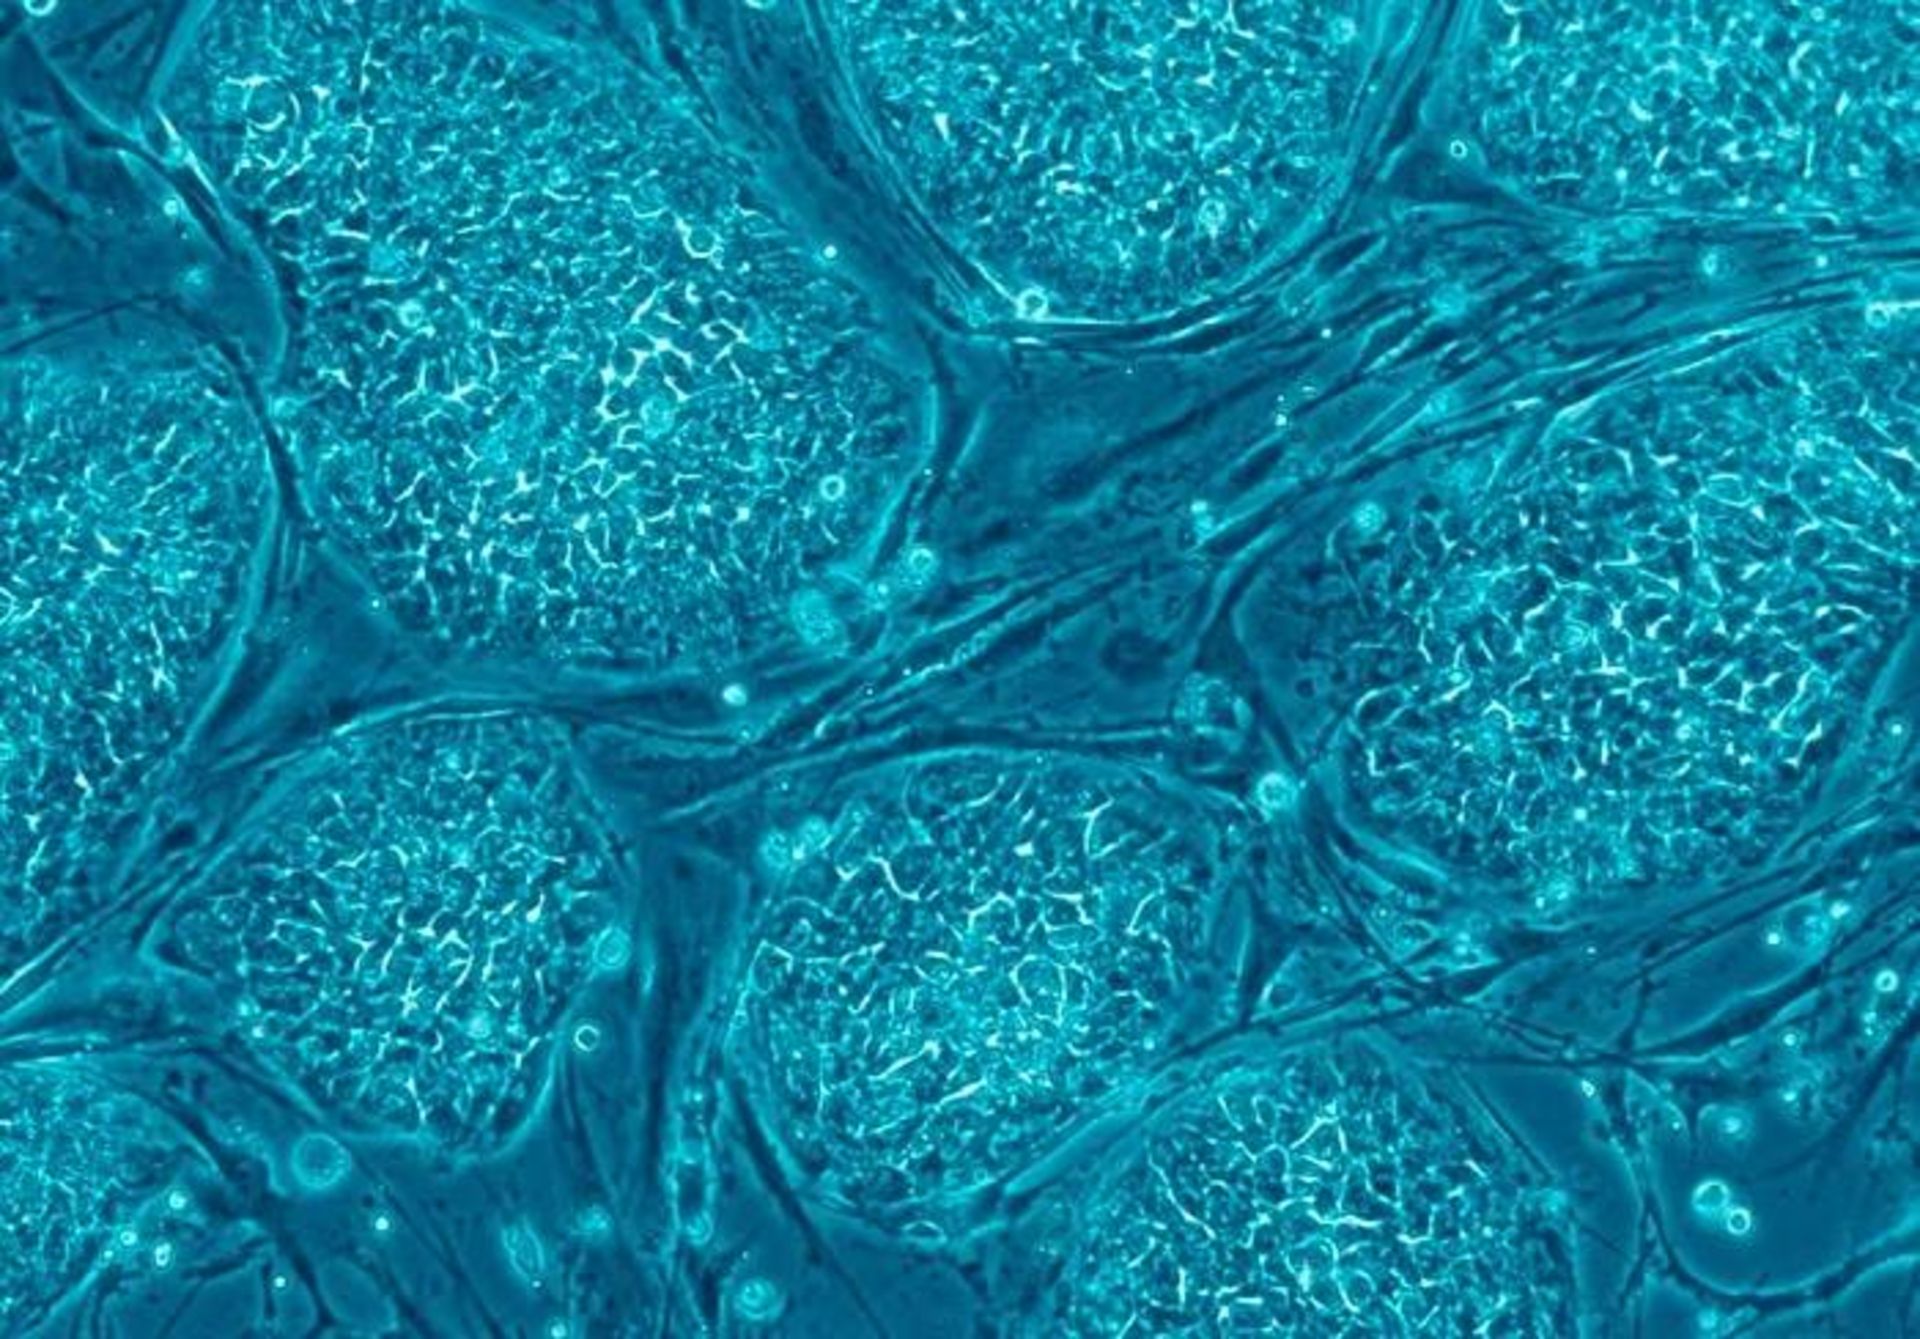 سلول های بنیادی رویانی انسان / Human embryonic stem cells